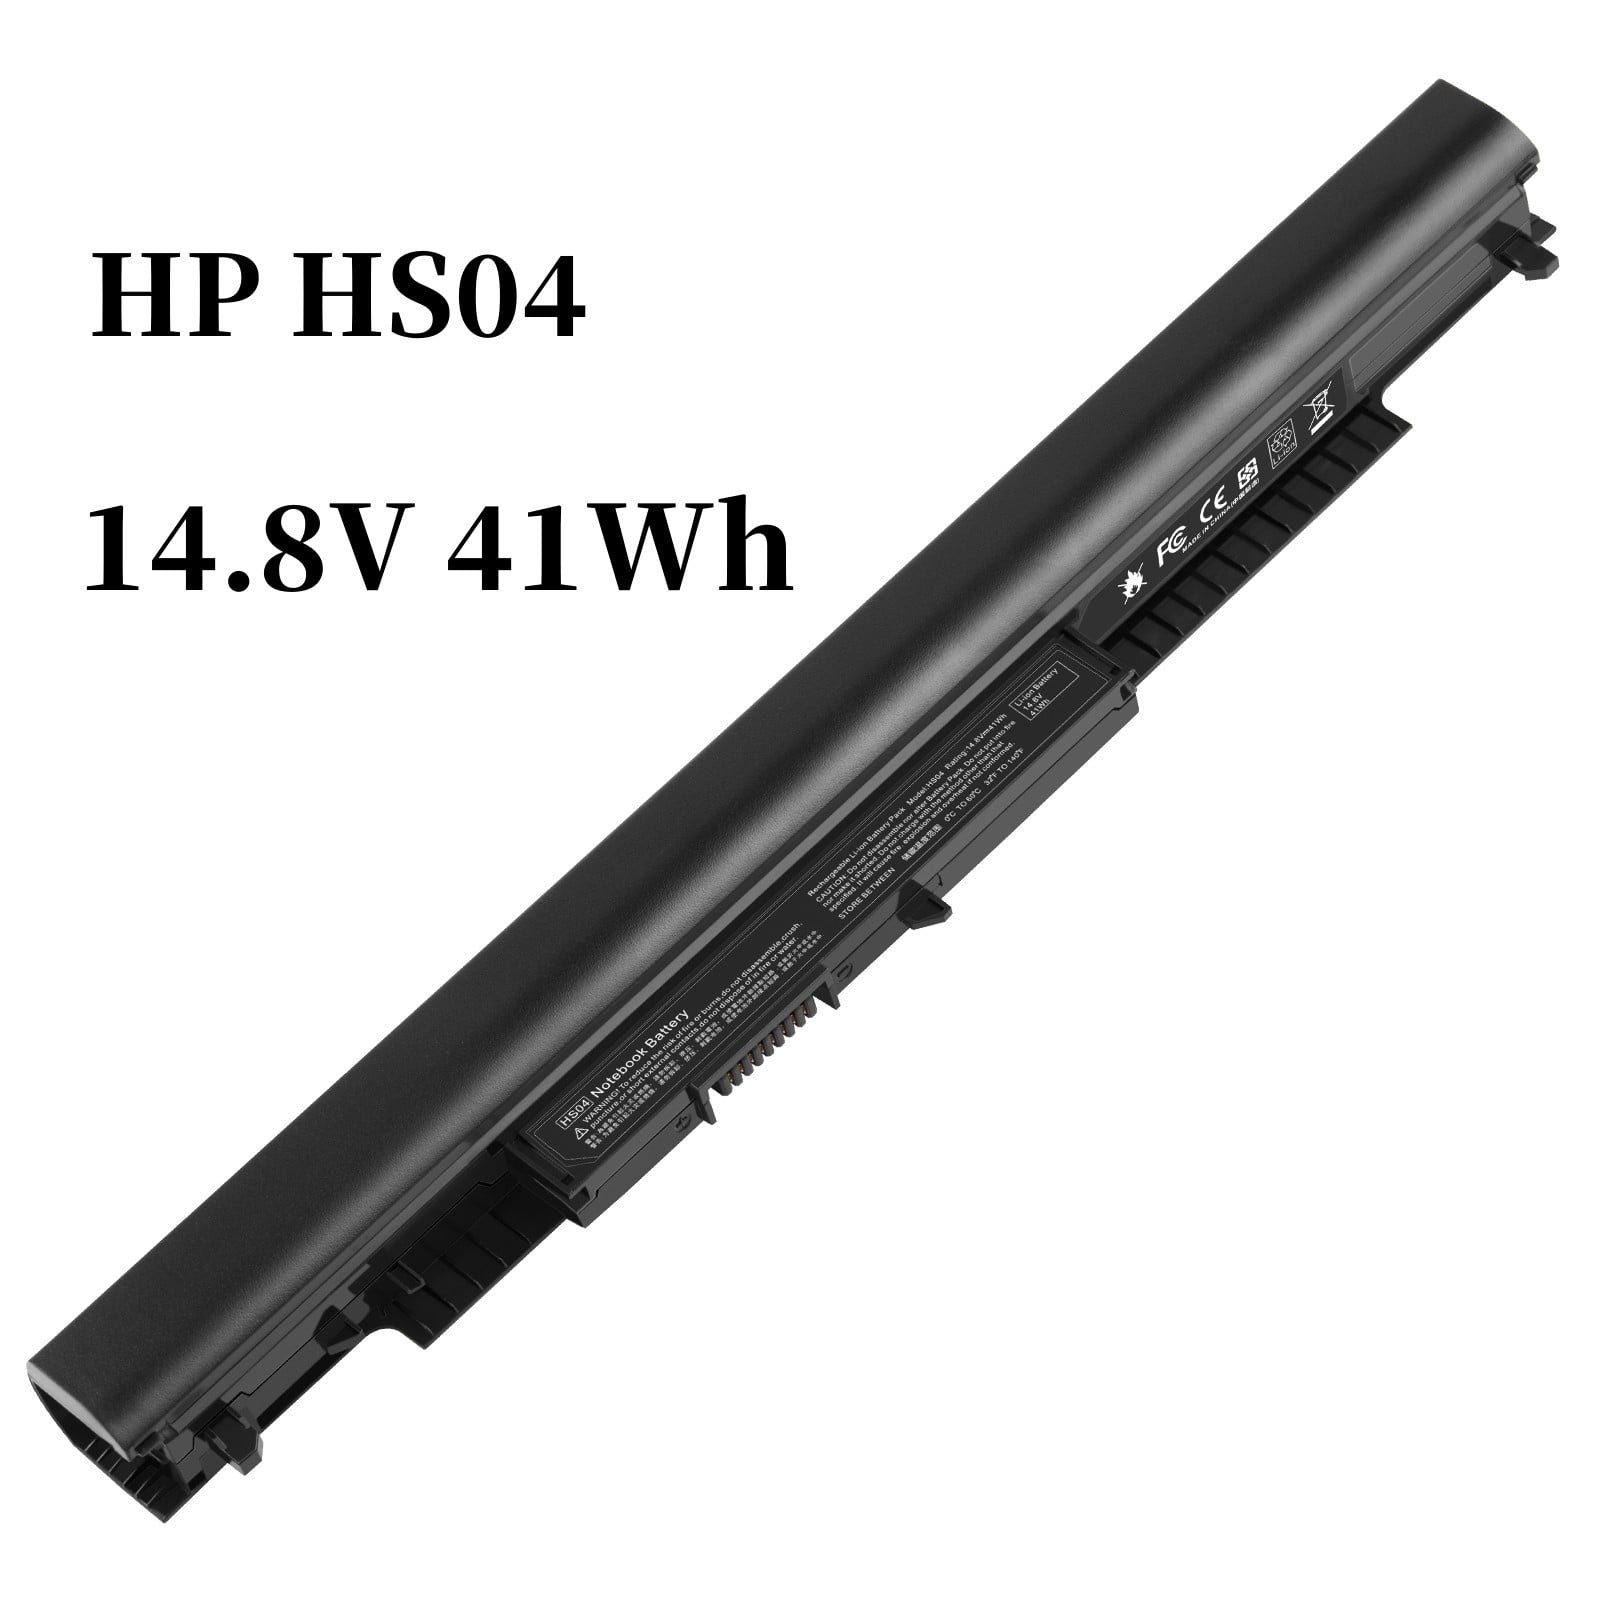 807956-001 Replace Battery for HP HS04 HS03 807957-001 HSTNN-LB6U  HSTNN-LB6V TPN-I120 TPN-I124 M2Q95AA MT245 807611-131 807611-141 HSTNN-PB6S  